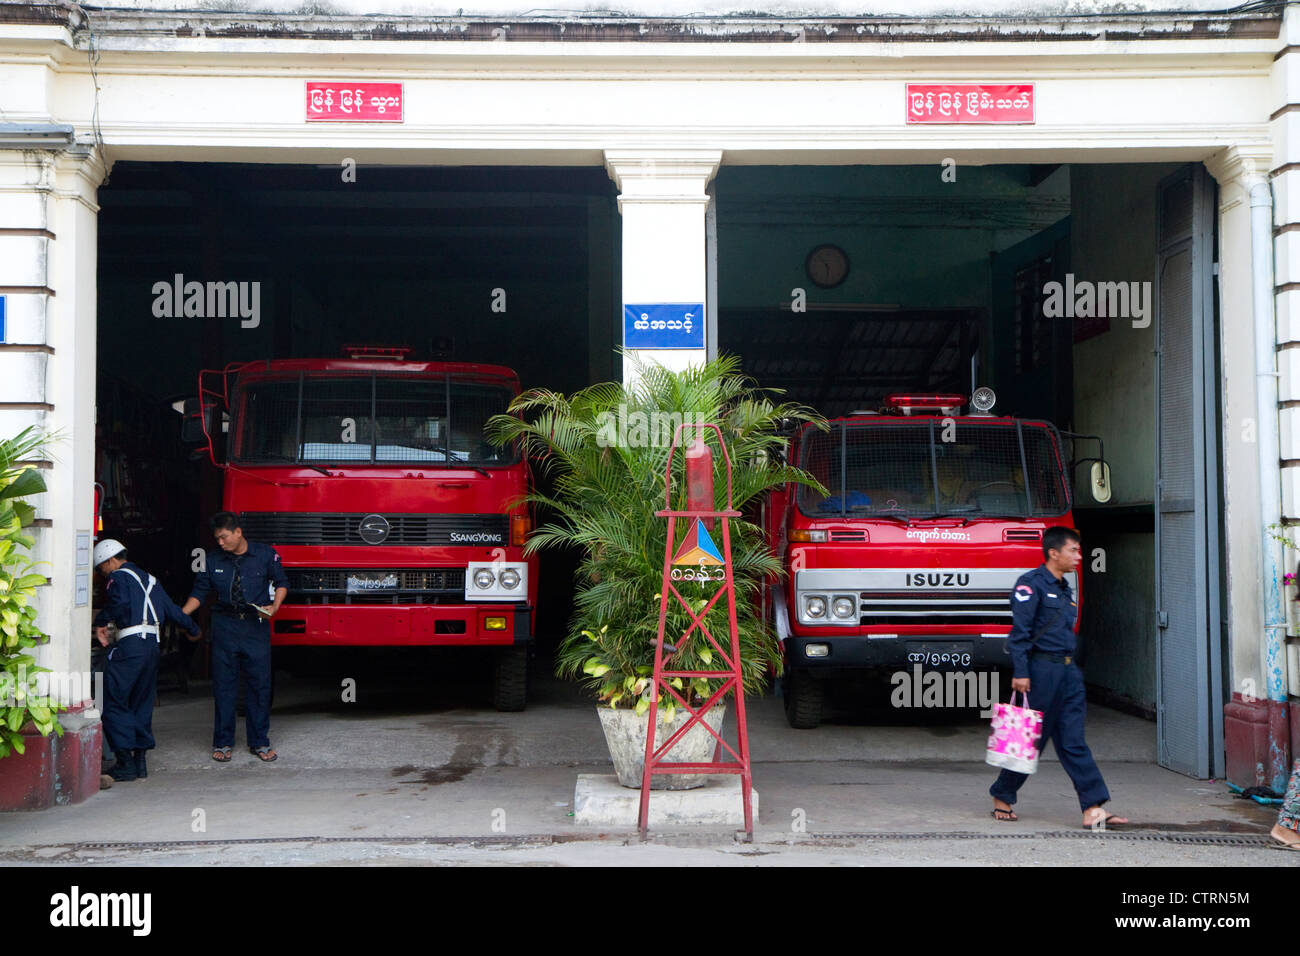 Dans la caserne de pompiers (Rangoon) Yangon, Myanmar (Birmanie). Banque D'Images